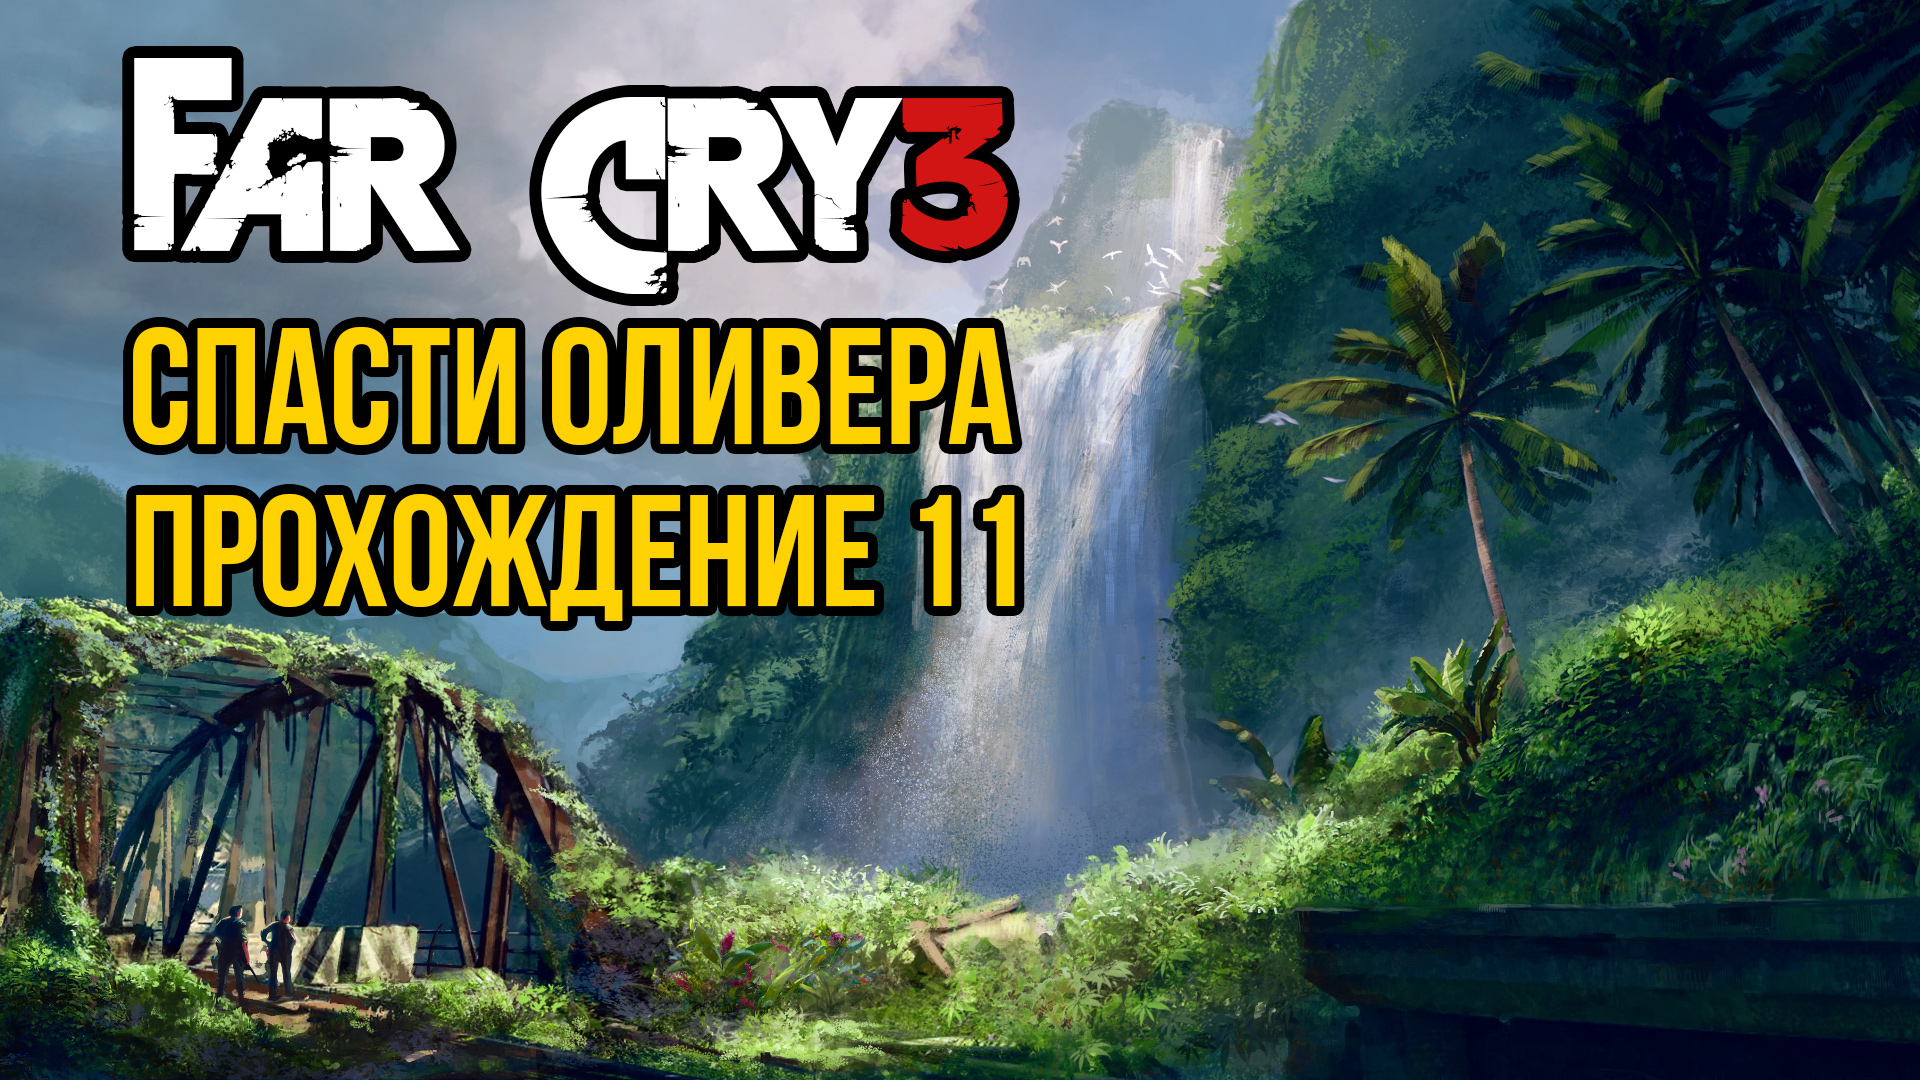 Far Cry 3 - Спасти Оливера. Прохождение 11